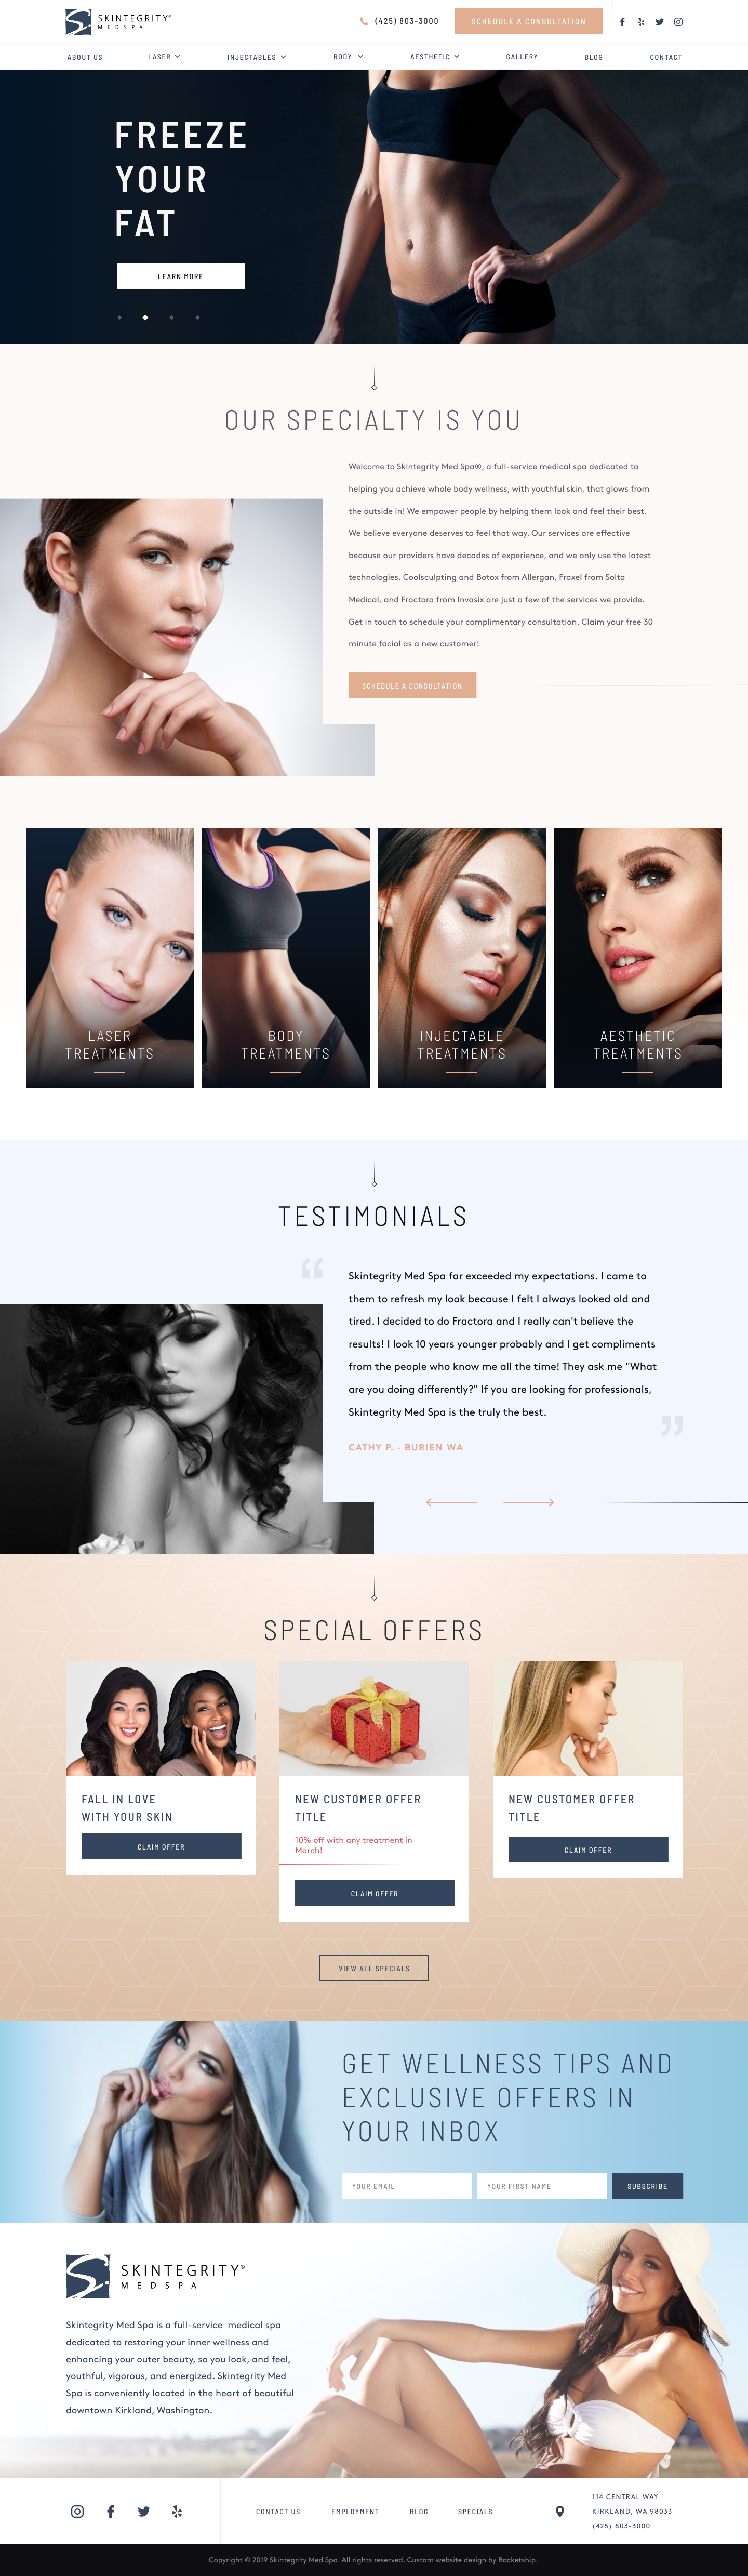 Skintegrity MedSpa Website Home Page Design